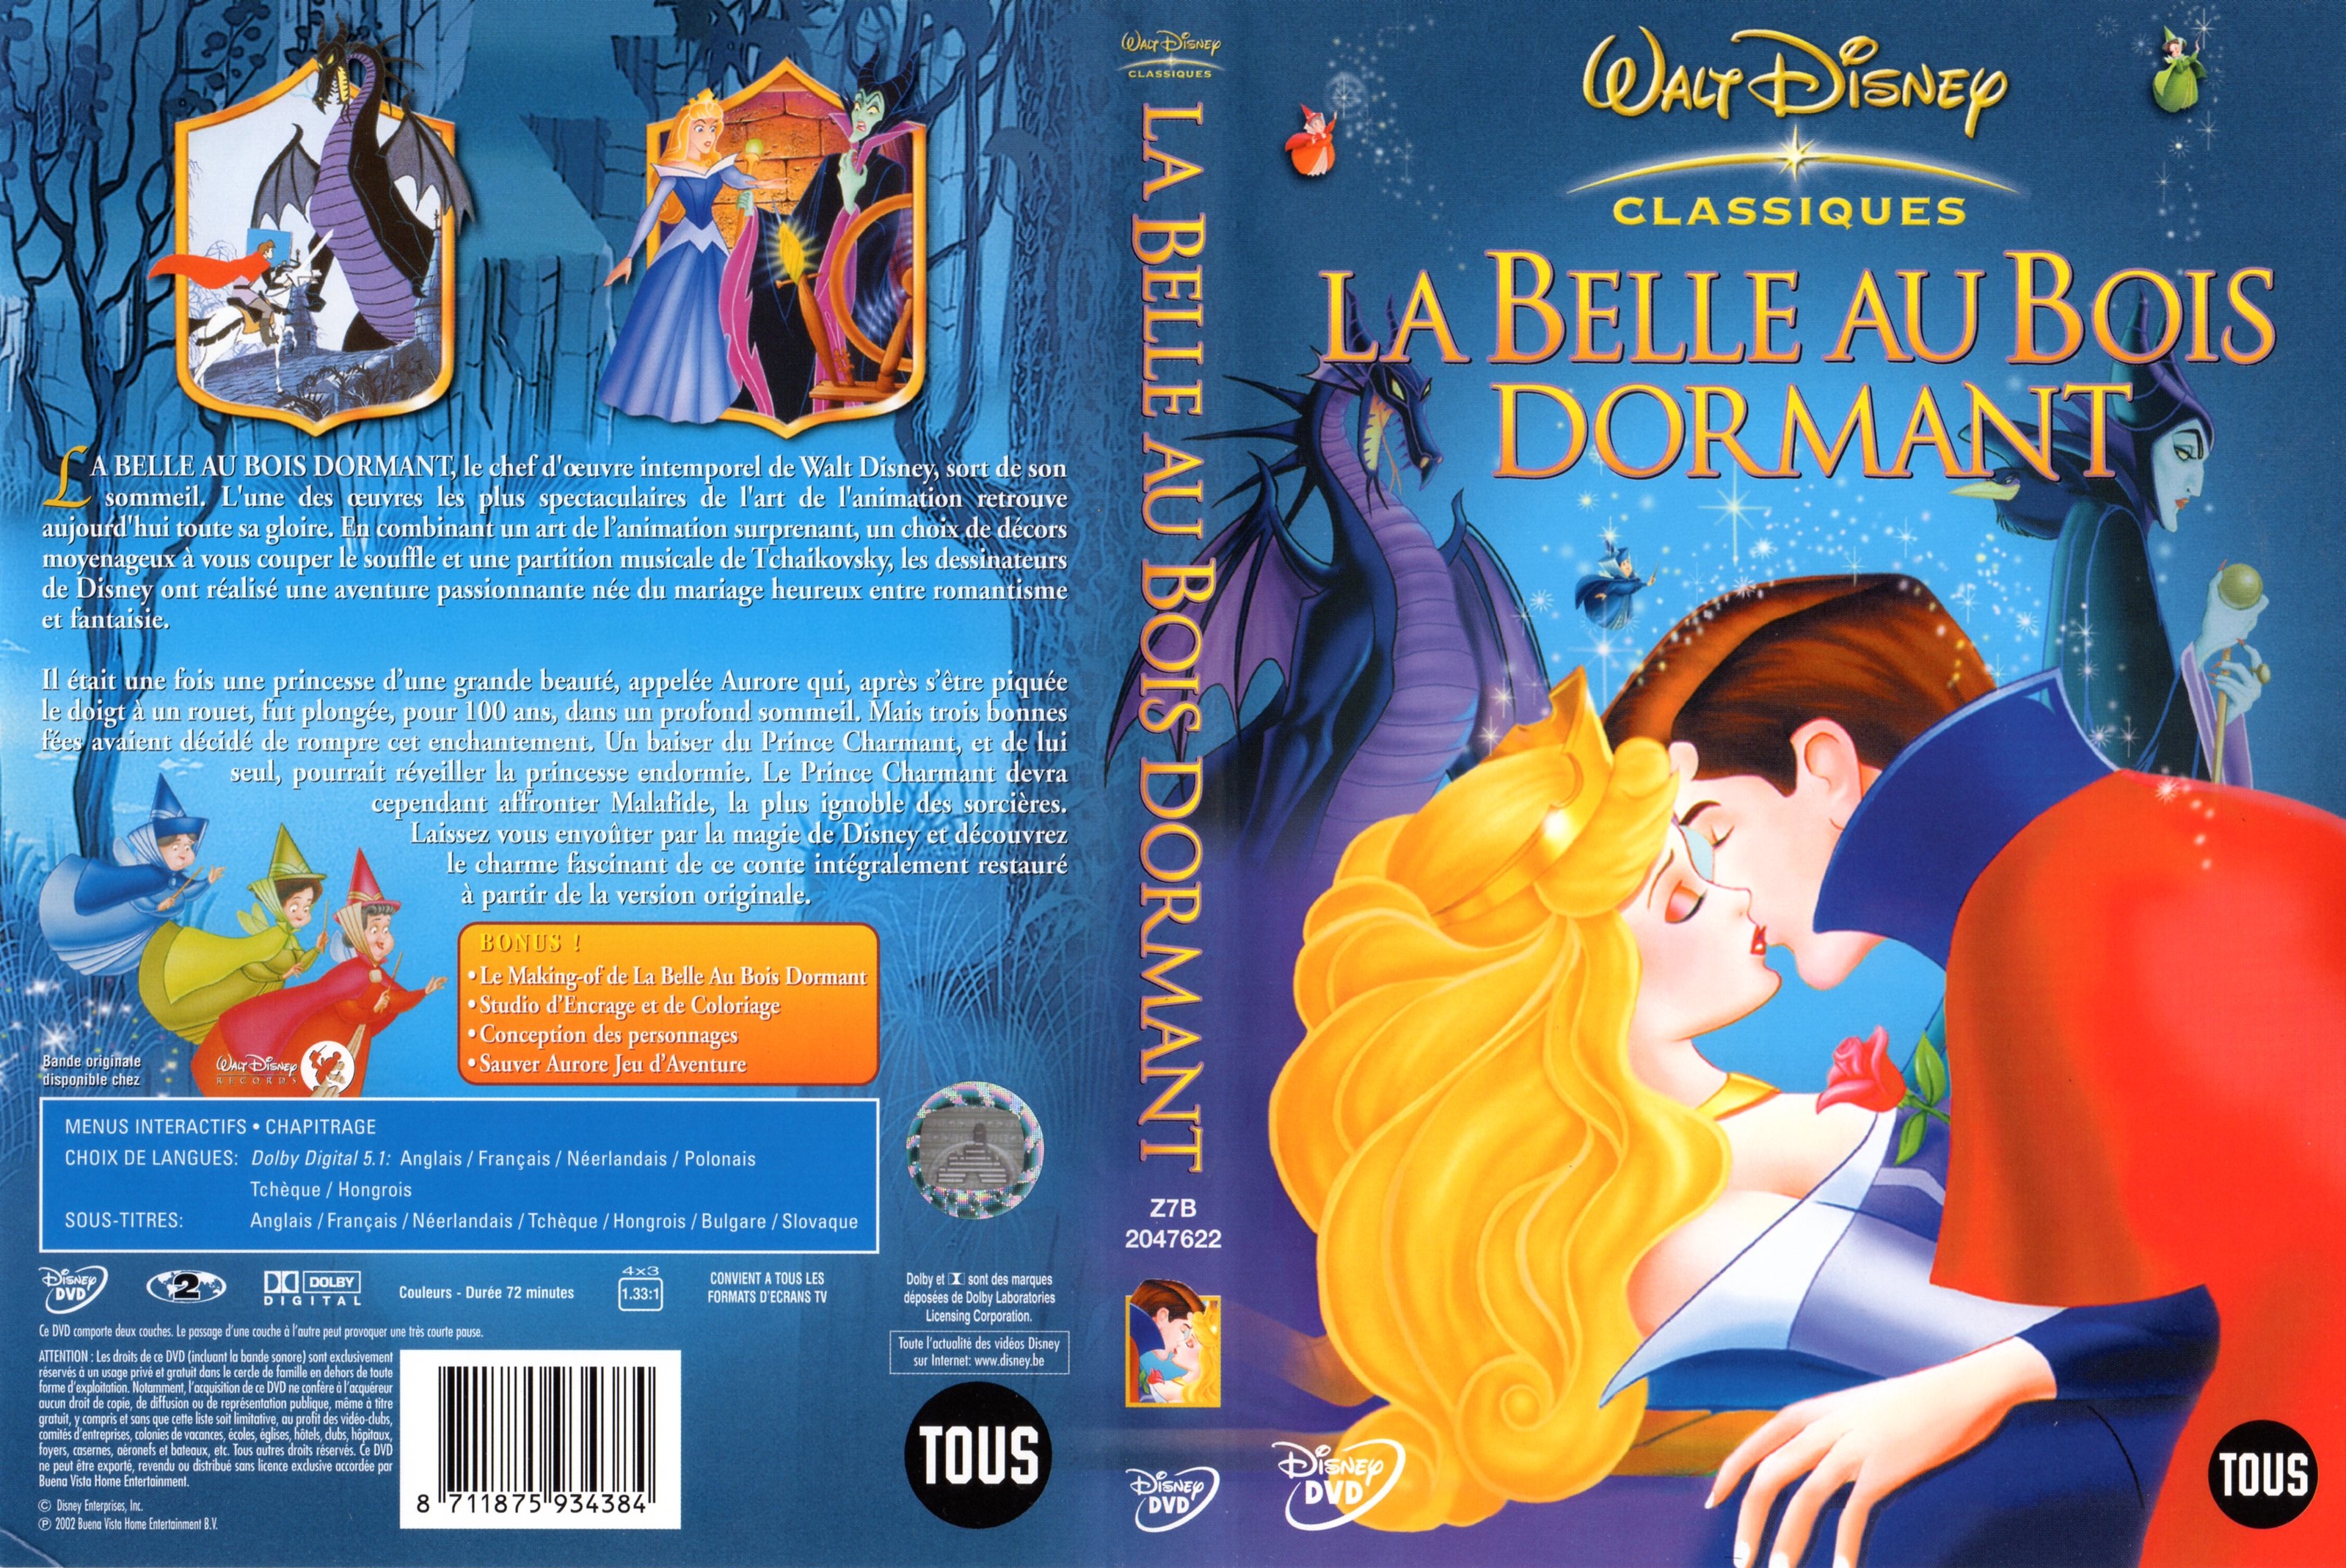 Jaquette DVD La belle au bois dormant v3